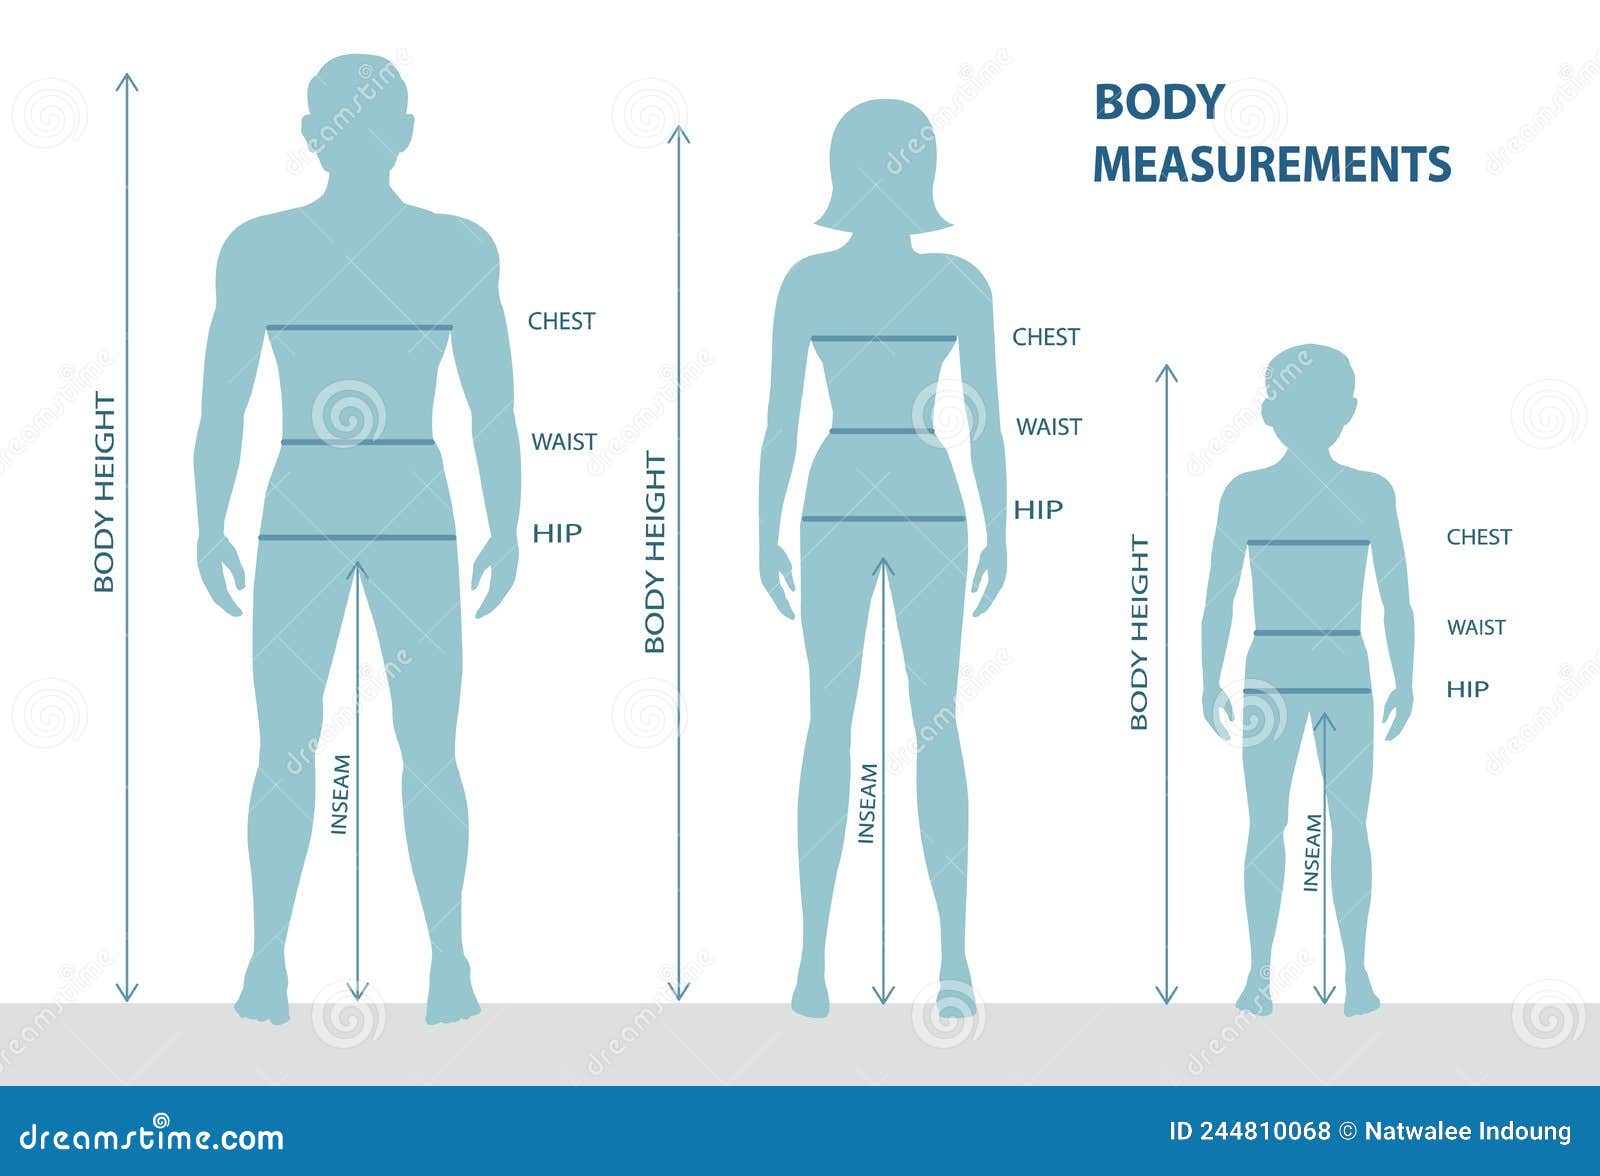 male body comparison chart